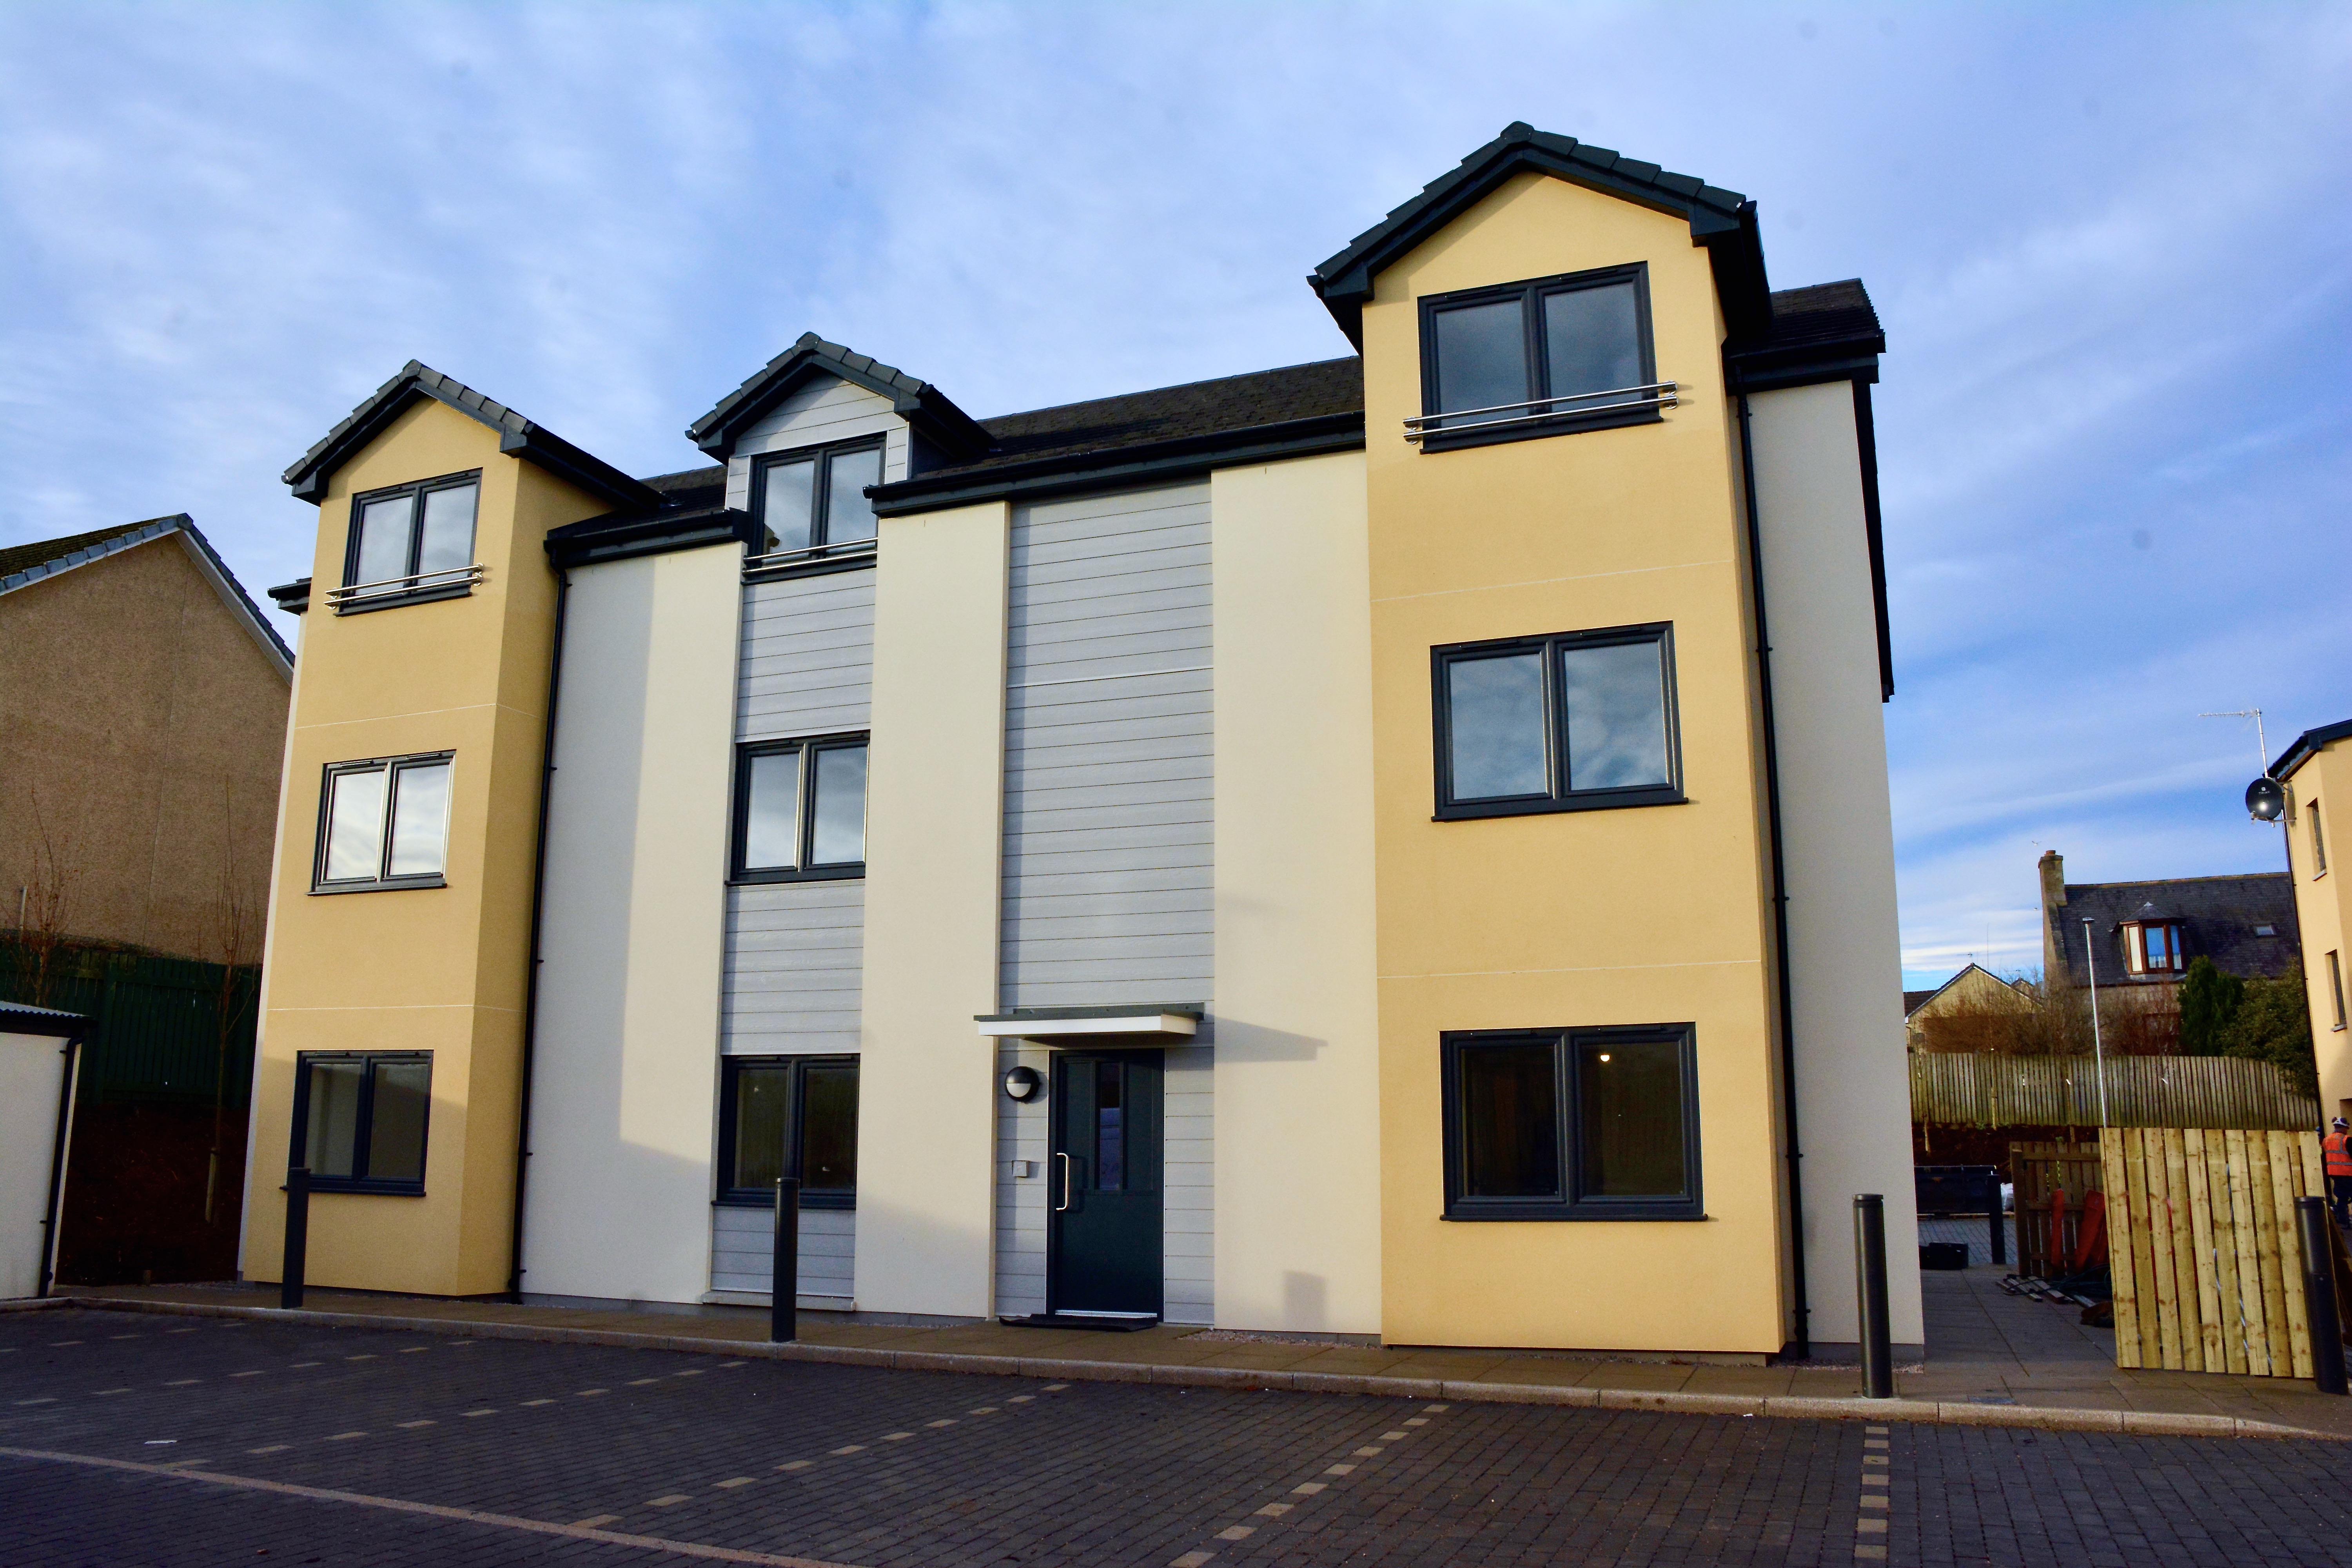 Castlehill Housing Association welcomes 24 new flats in Kintore